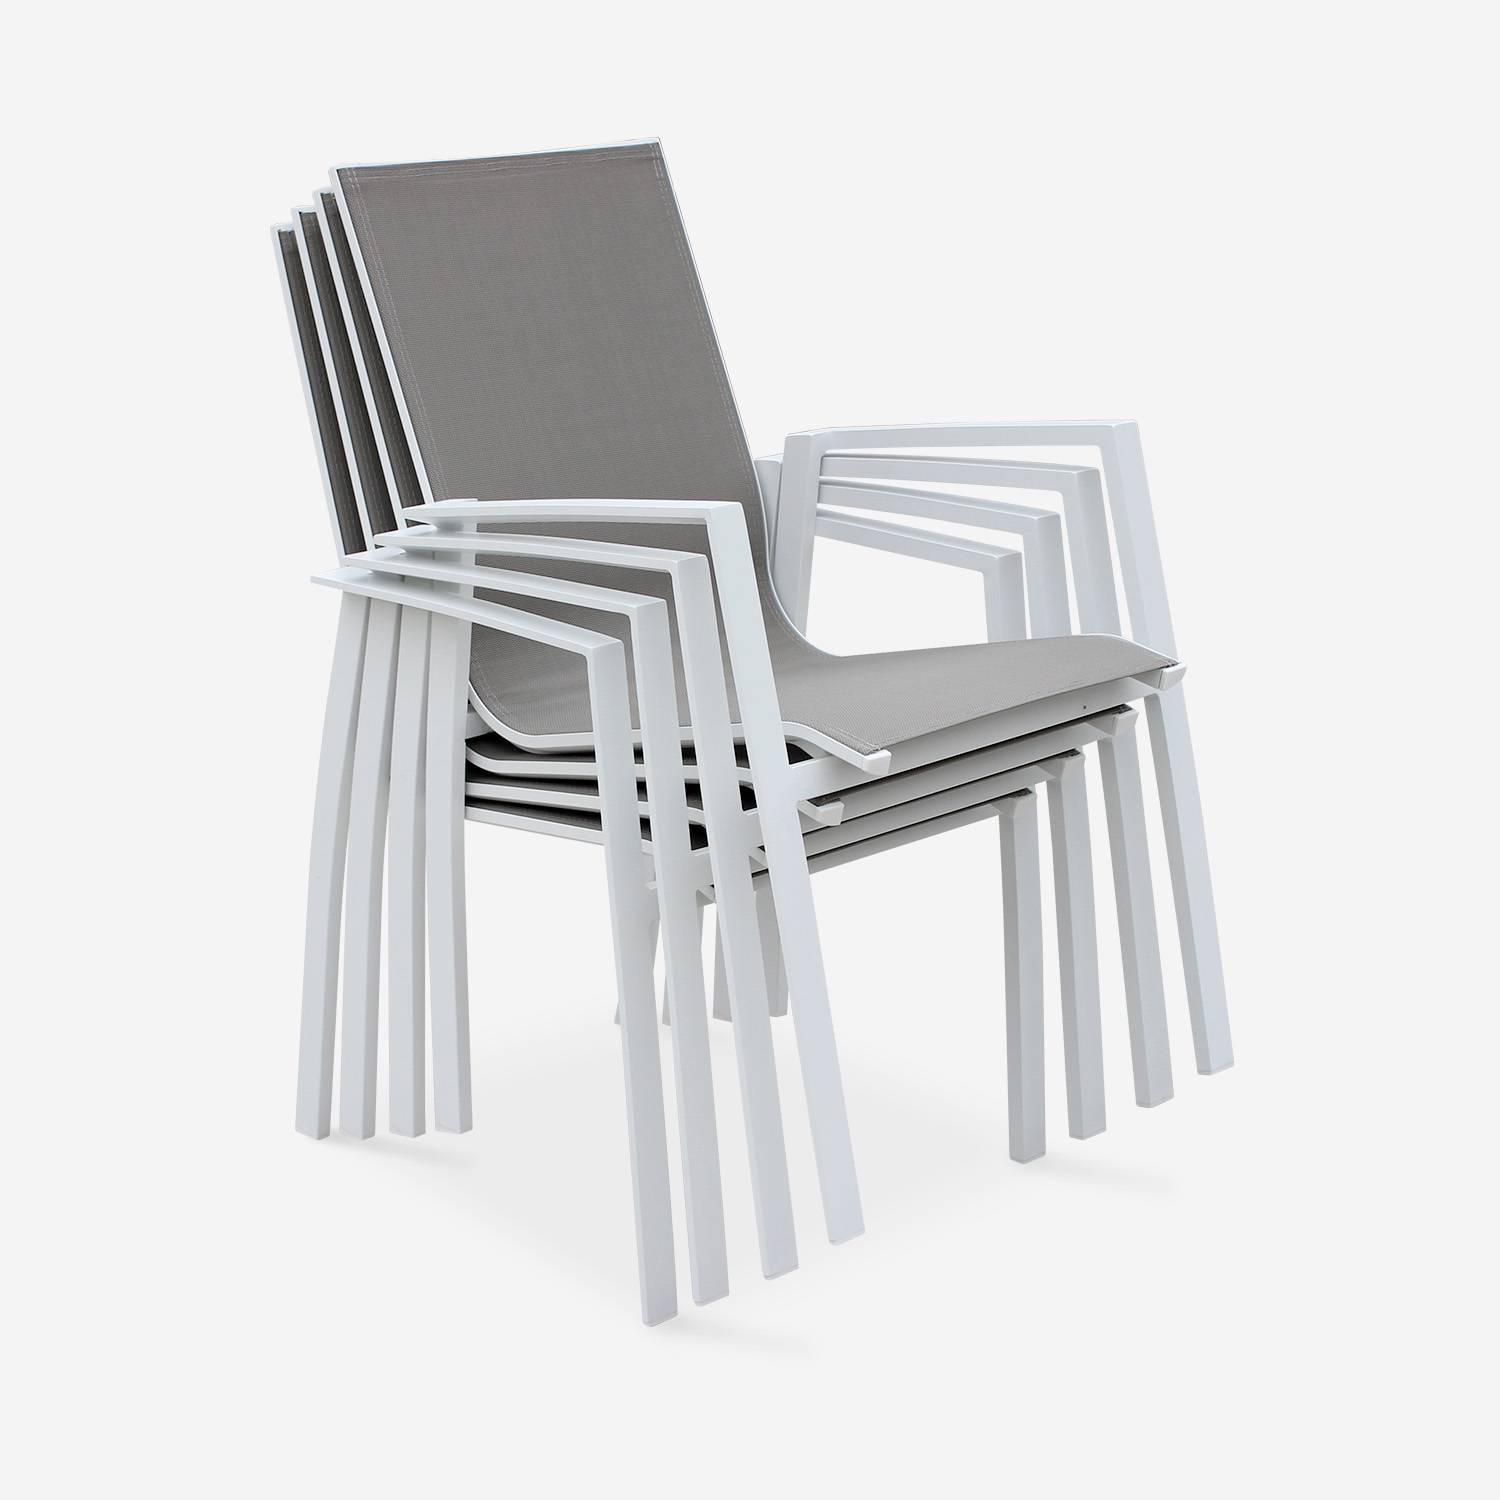 Coppia di sedie Washington Bianco/ Marrone Talpa in alluminio bianco e textilene colore marrone talpa, impilabili Photo3